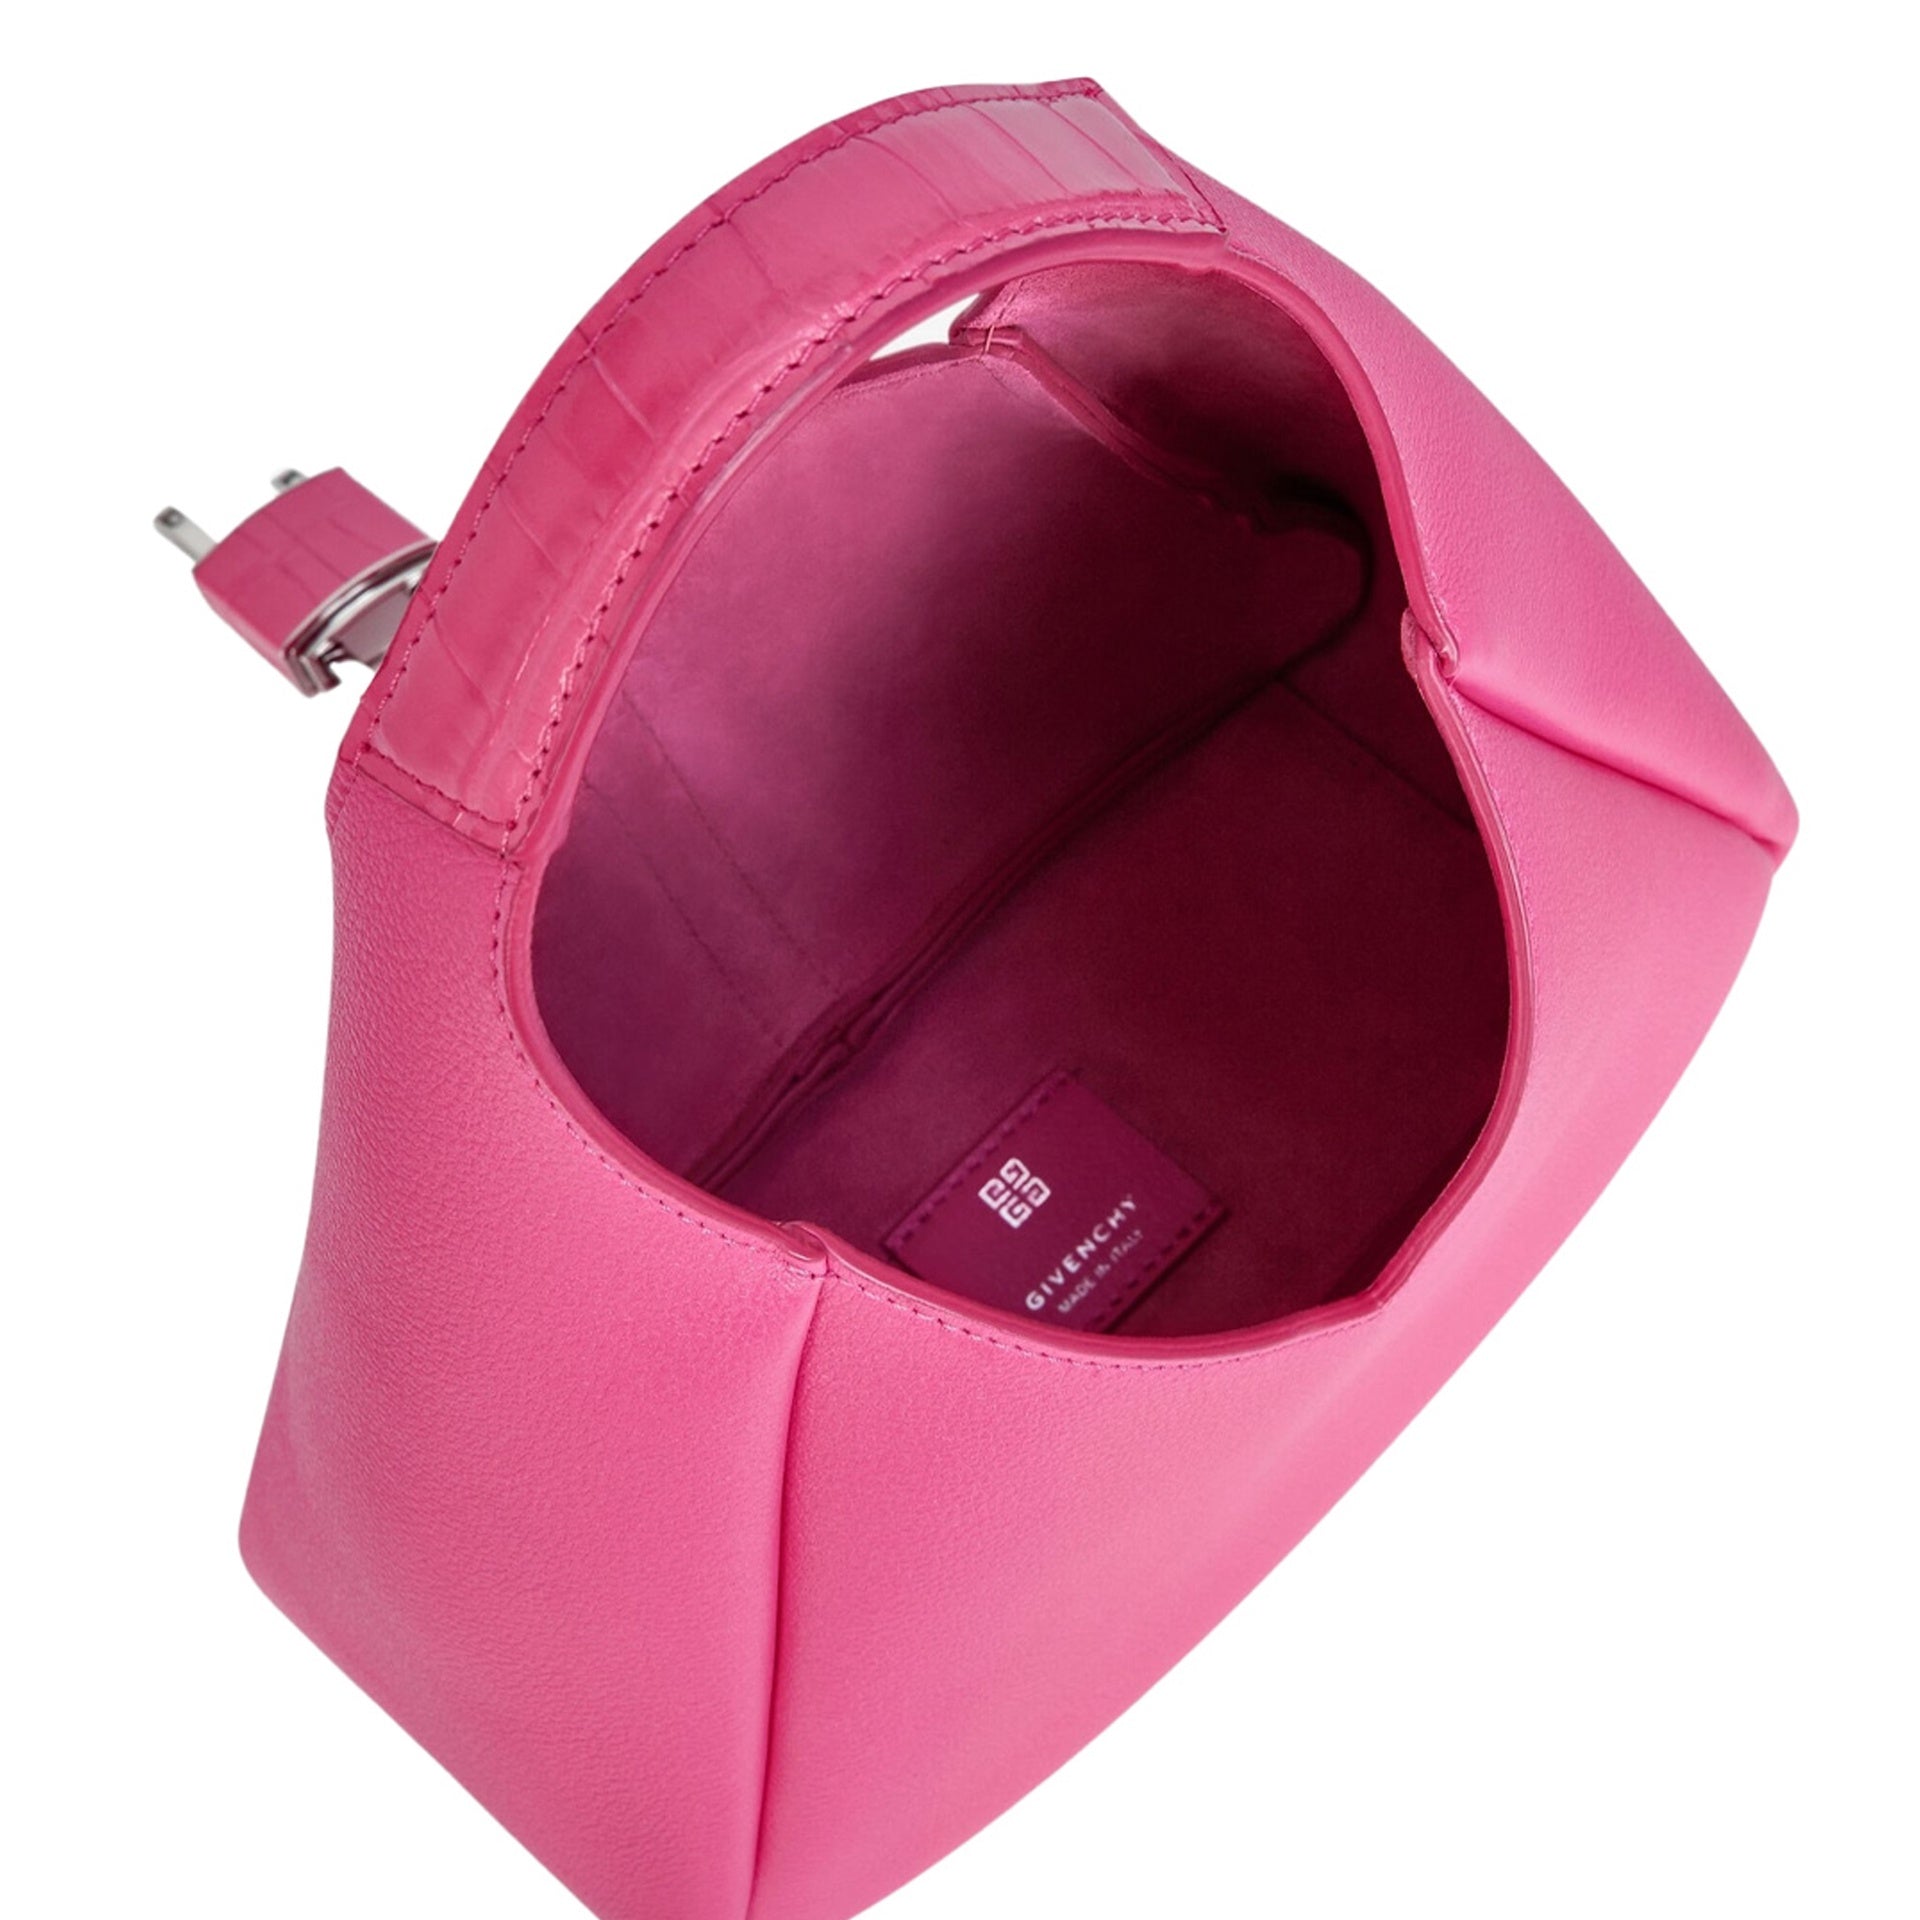 Givenchy G-Hobo Mini Bag